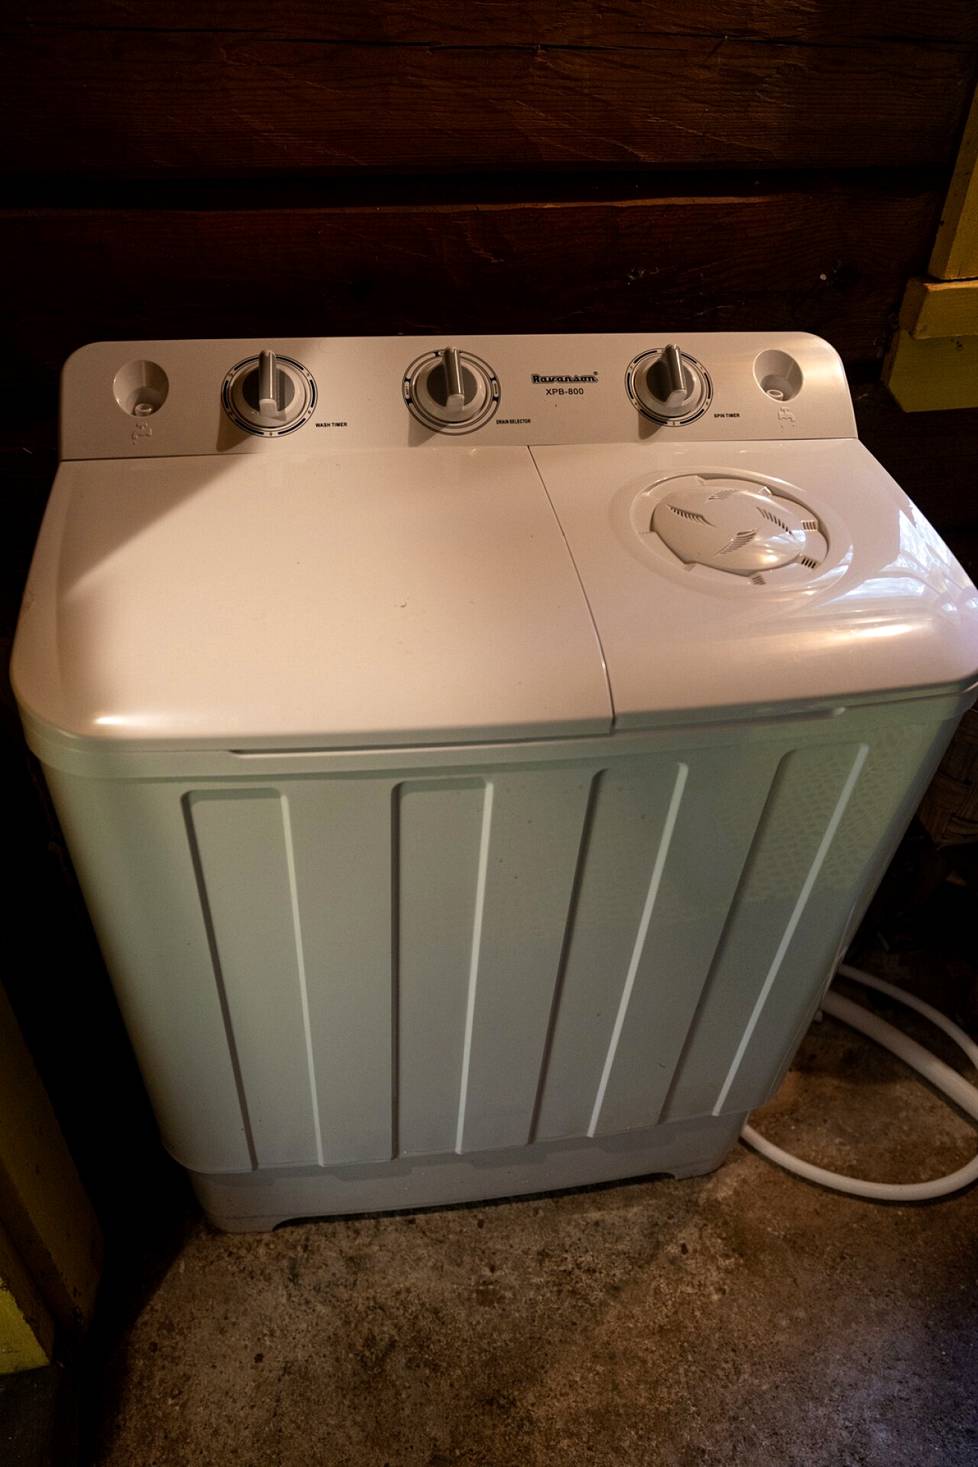  Pyykkäämisen Katri hoitaa vanhaan tapaan pulsaattori-pesukoneella. - Silloin. kun tarjolla ei ole paineistettua vettä, tämä on ihan kätevä ratkaisu. Toki hieman vaivalloinen, mutta puhdasta tulee.